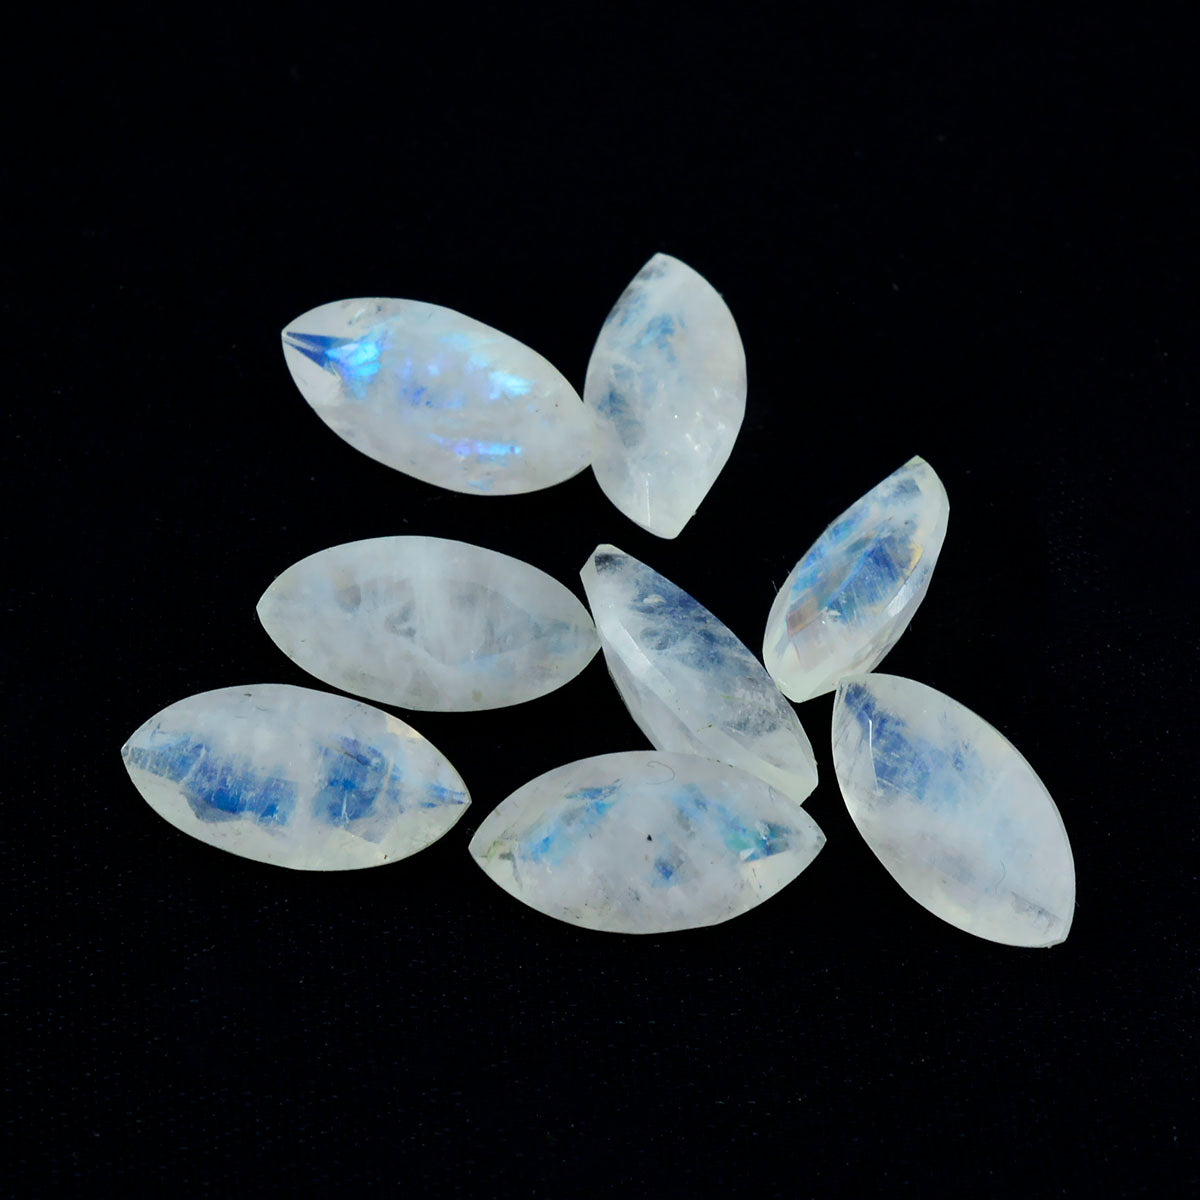 Riyogems 1pc pierre de lune arc-en-ciel blanche à facettes 8x16mm forme marquise pierres précieuses de qualité impressionnante